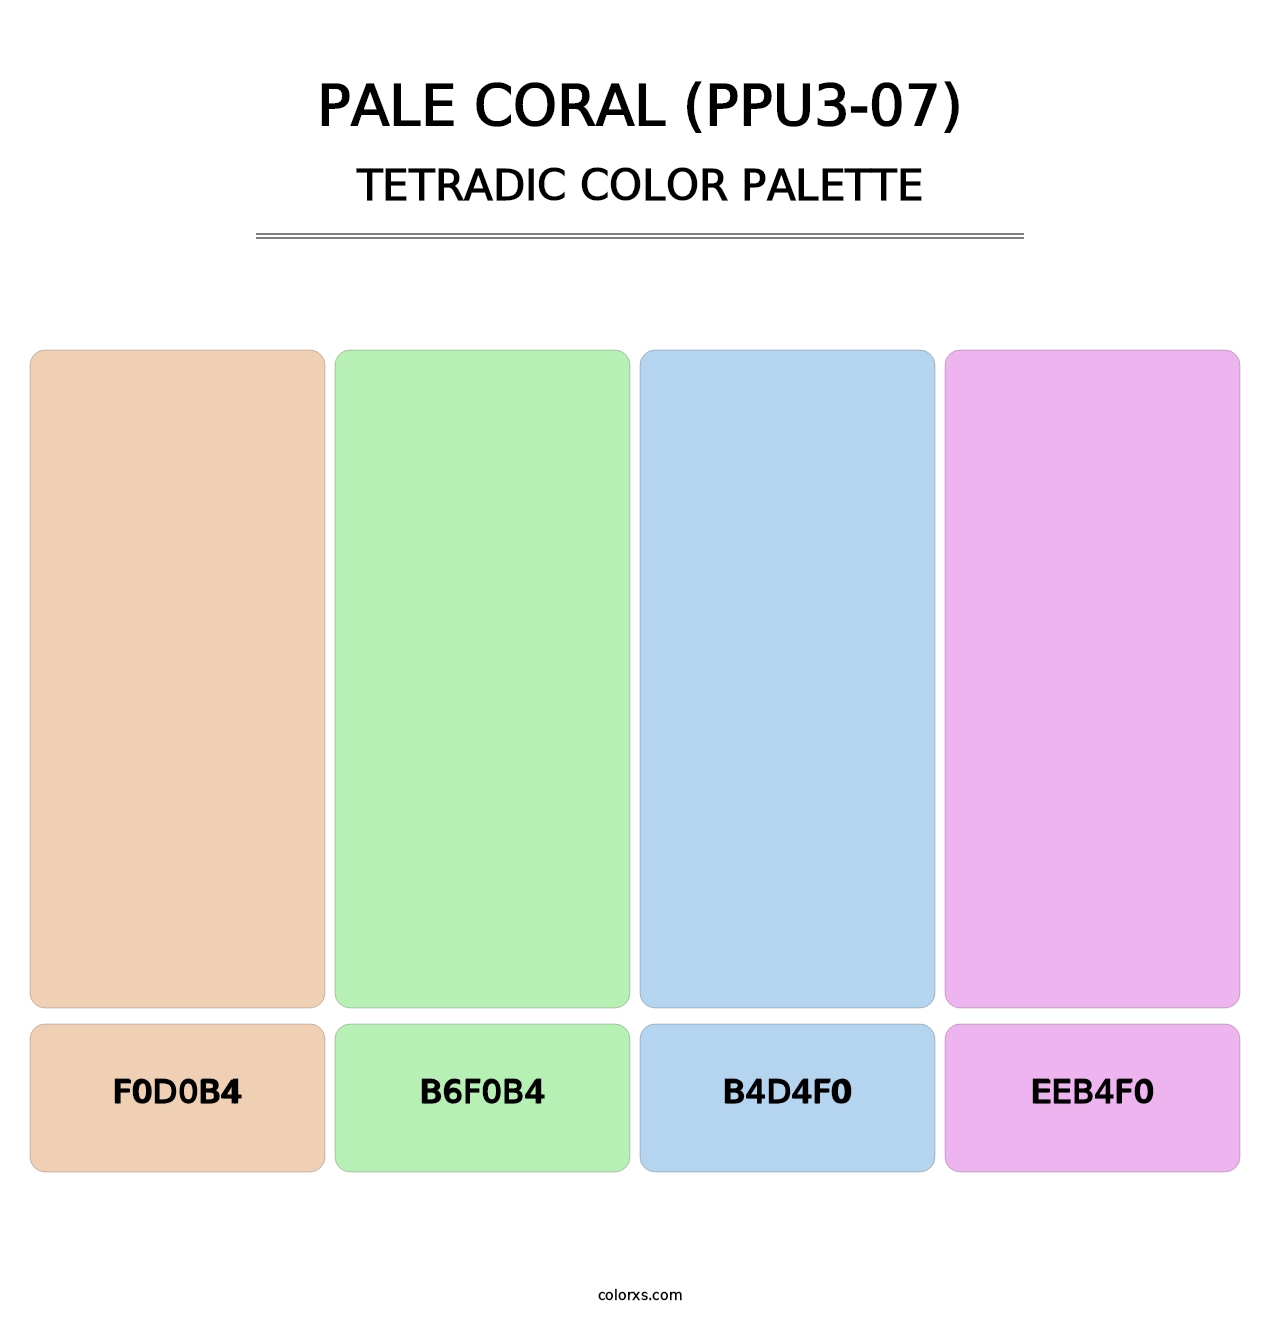 Pale Coral (PPU3-07) - Tetradic Color Palette